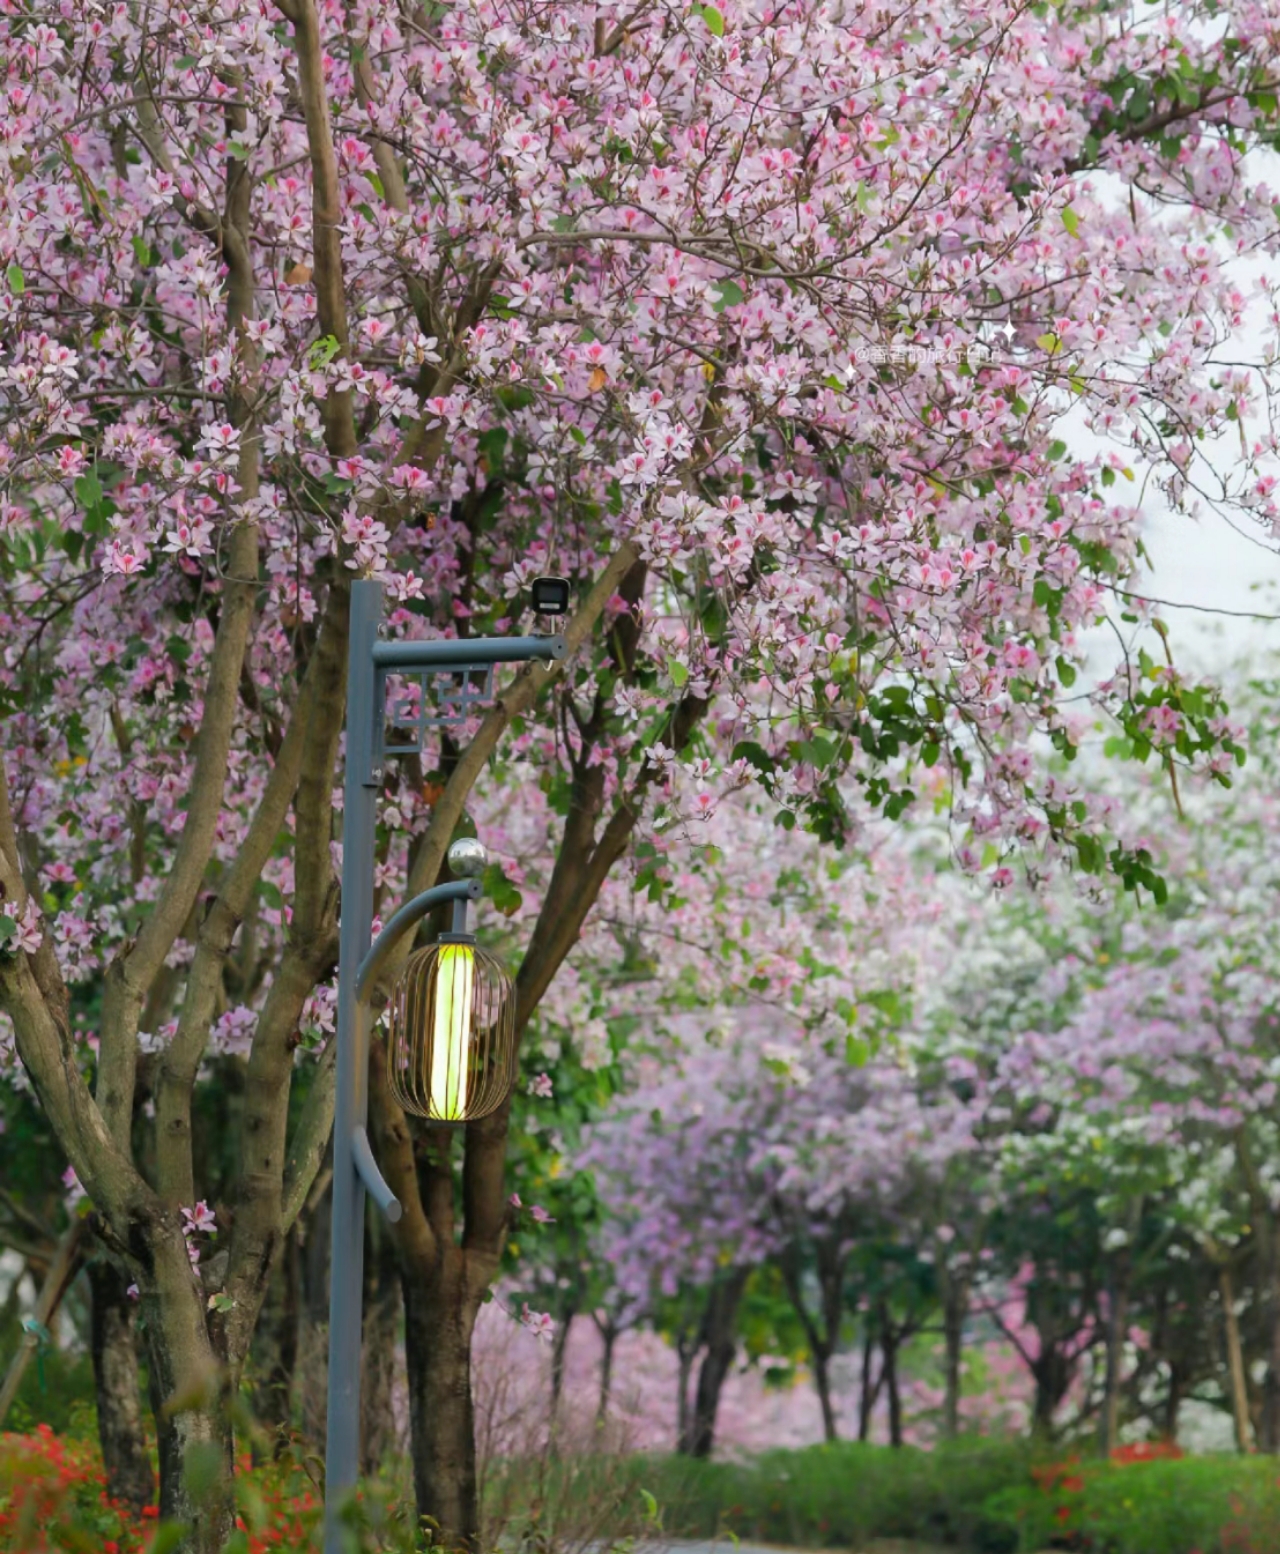 接下来的百草园，是深圳赏花的天花板!3月的光明百草园，鹅颈河两岸的紫荆花将开得像樱花一样绚烂!近两公